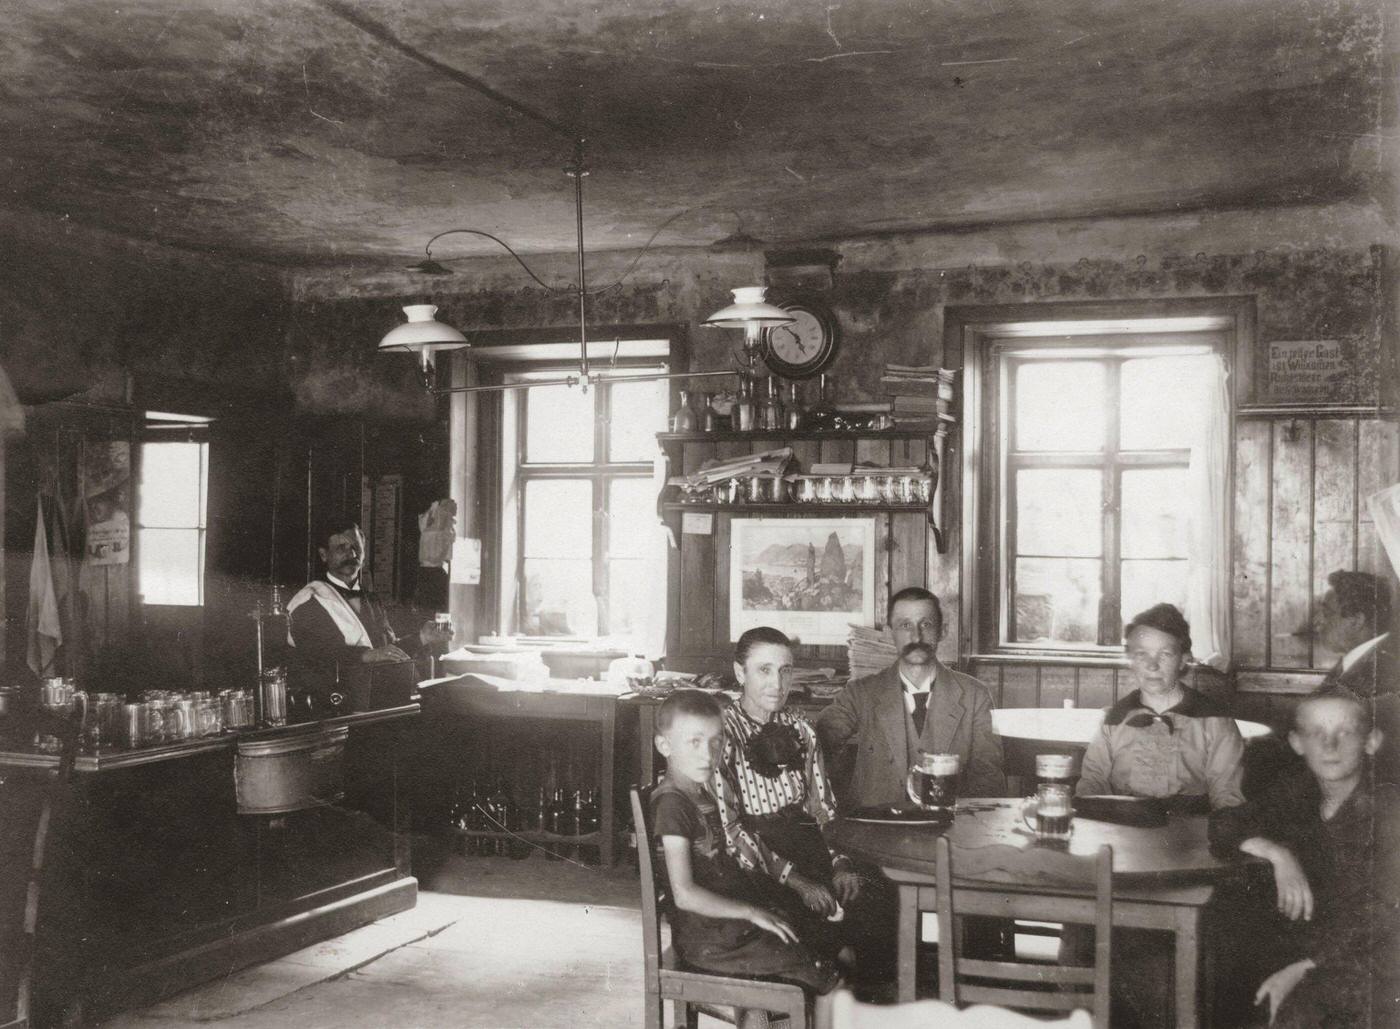 Inside the restaurant "Zum Kurfuersten" at Althahnstraße, The smallest tavern in Vienna with only 5 tables, 1900